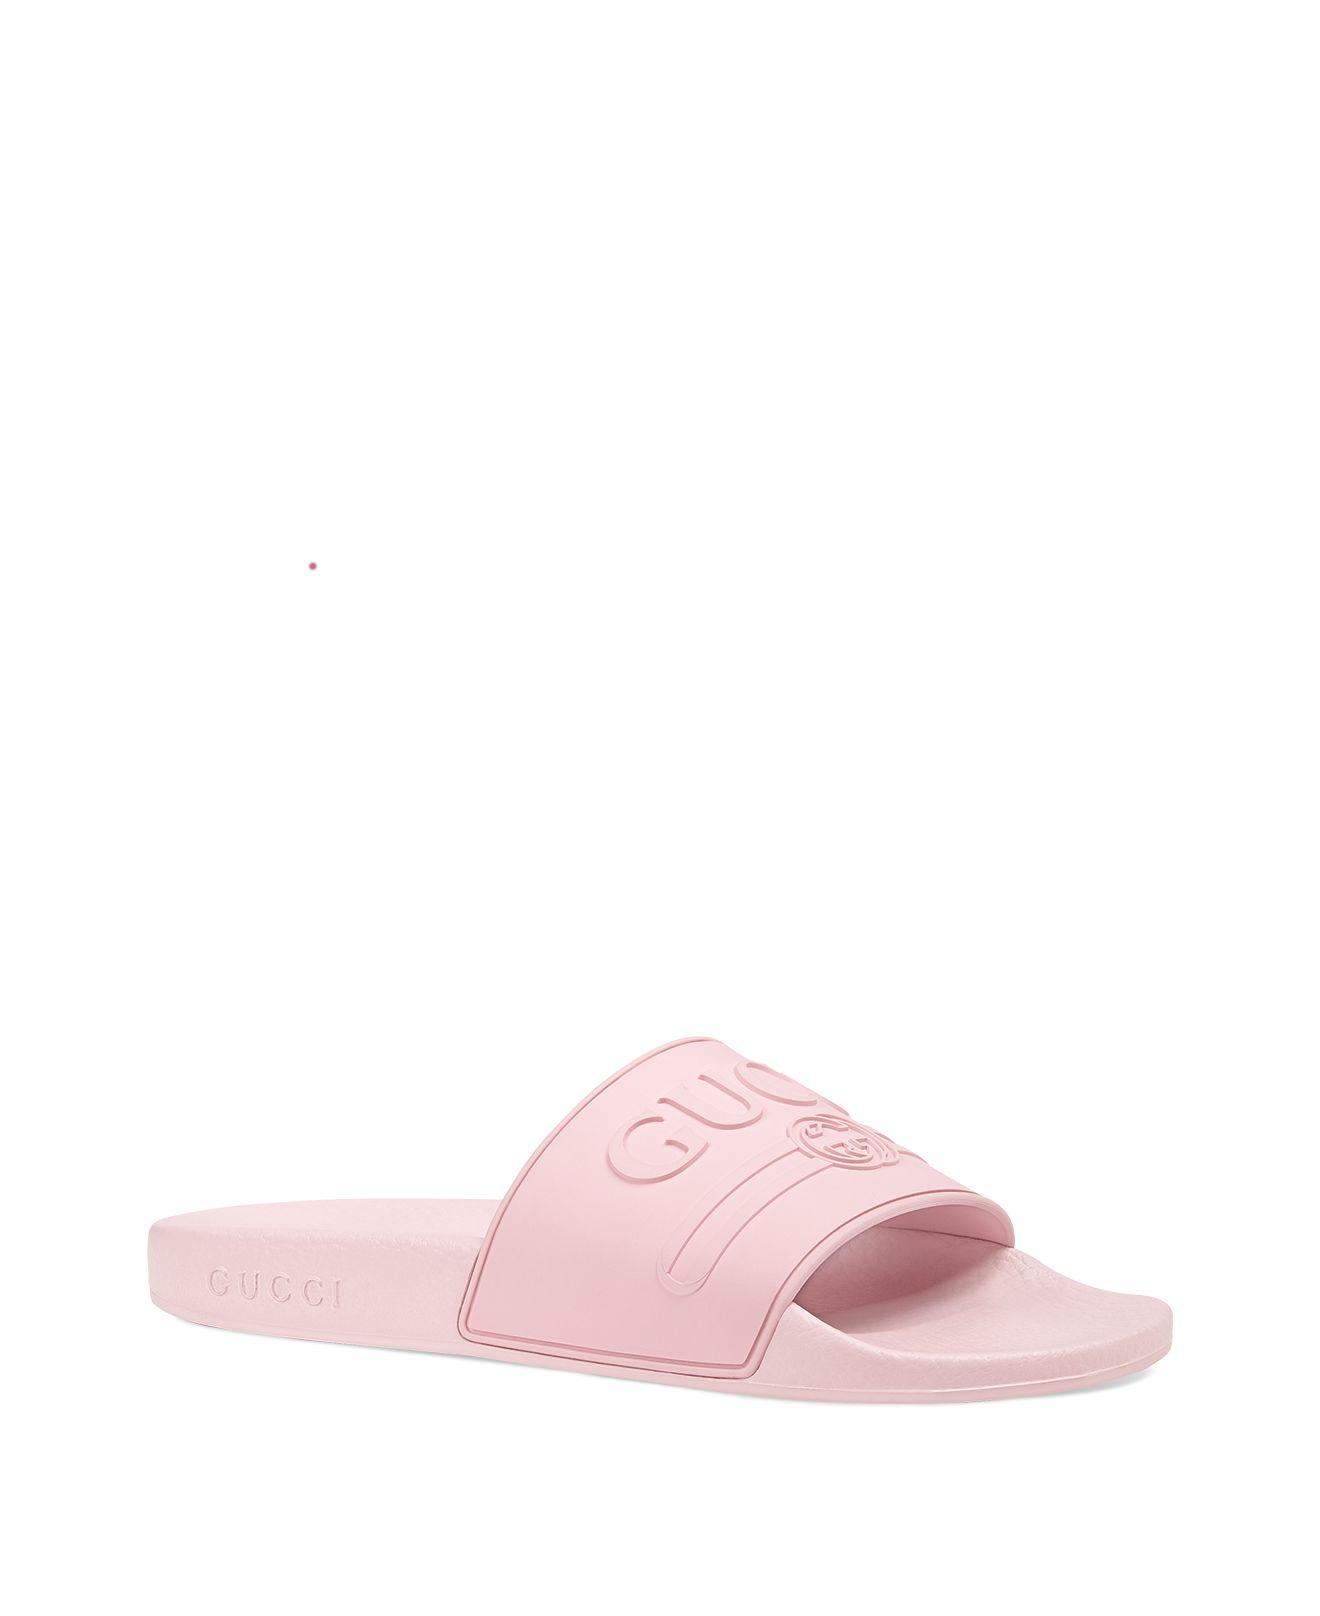 Erweitern definitiv Konzept pink gucci sandals Vorverkauf Uluru tragen